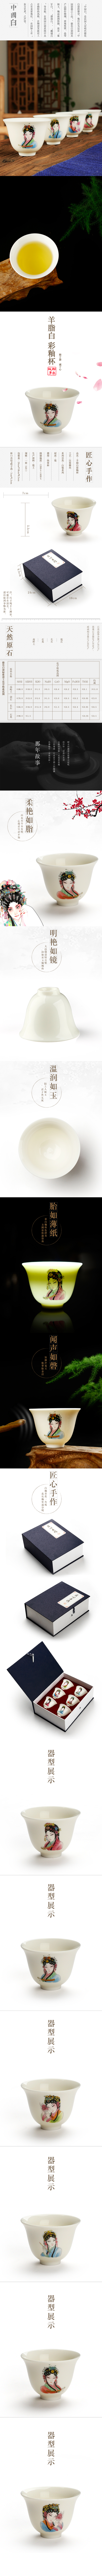 淘宝美工晓山半月那年故事中国白瓷杯羊脂白素雅详情页作品